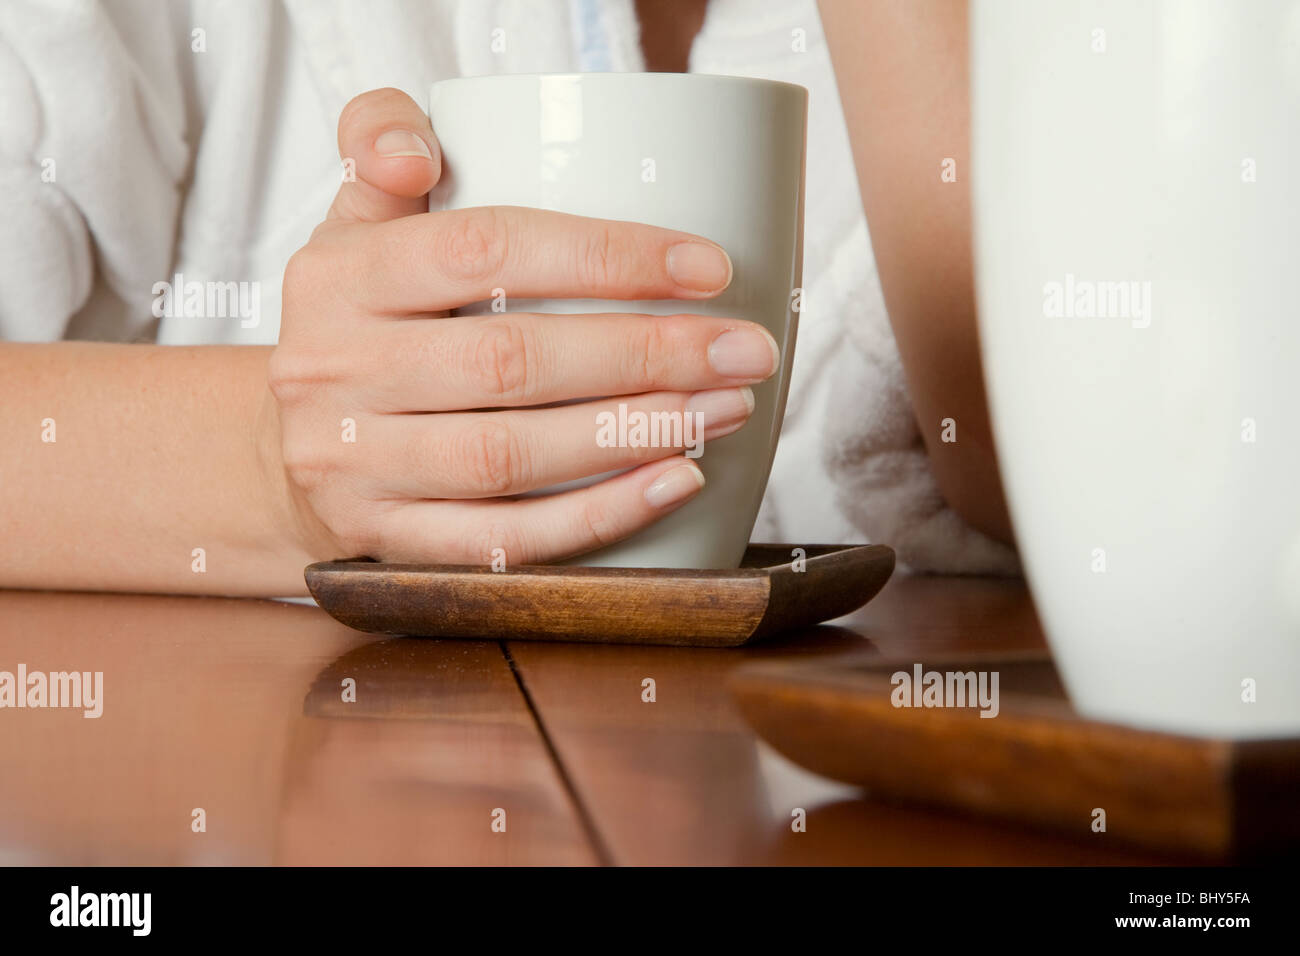 Tiros de ángulo bajo de una mujer en una conversación en un café con su mano alrededor de una taza de café Foto de stock